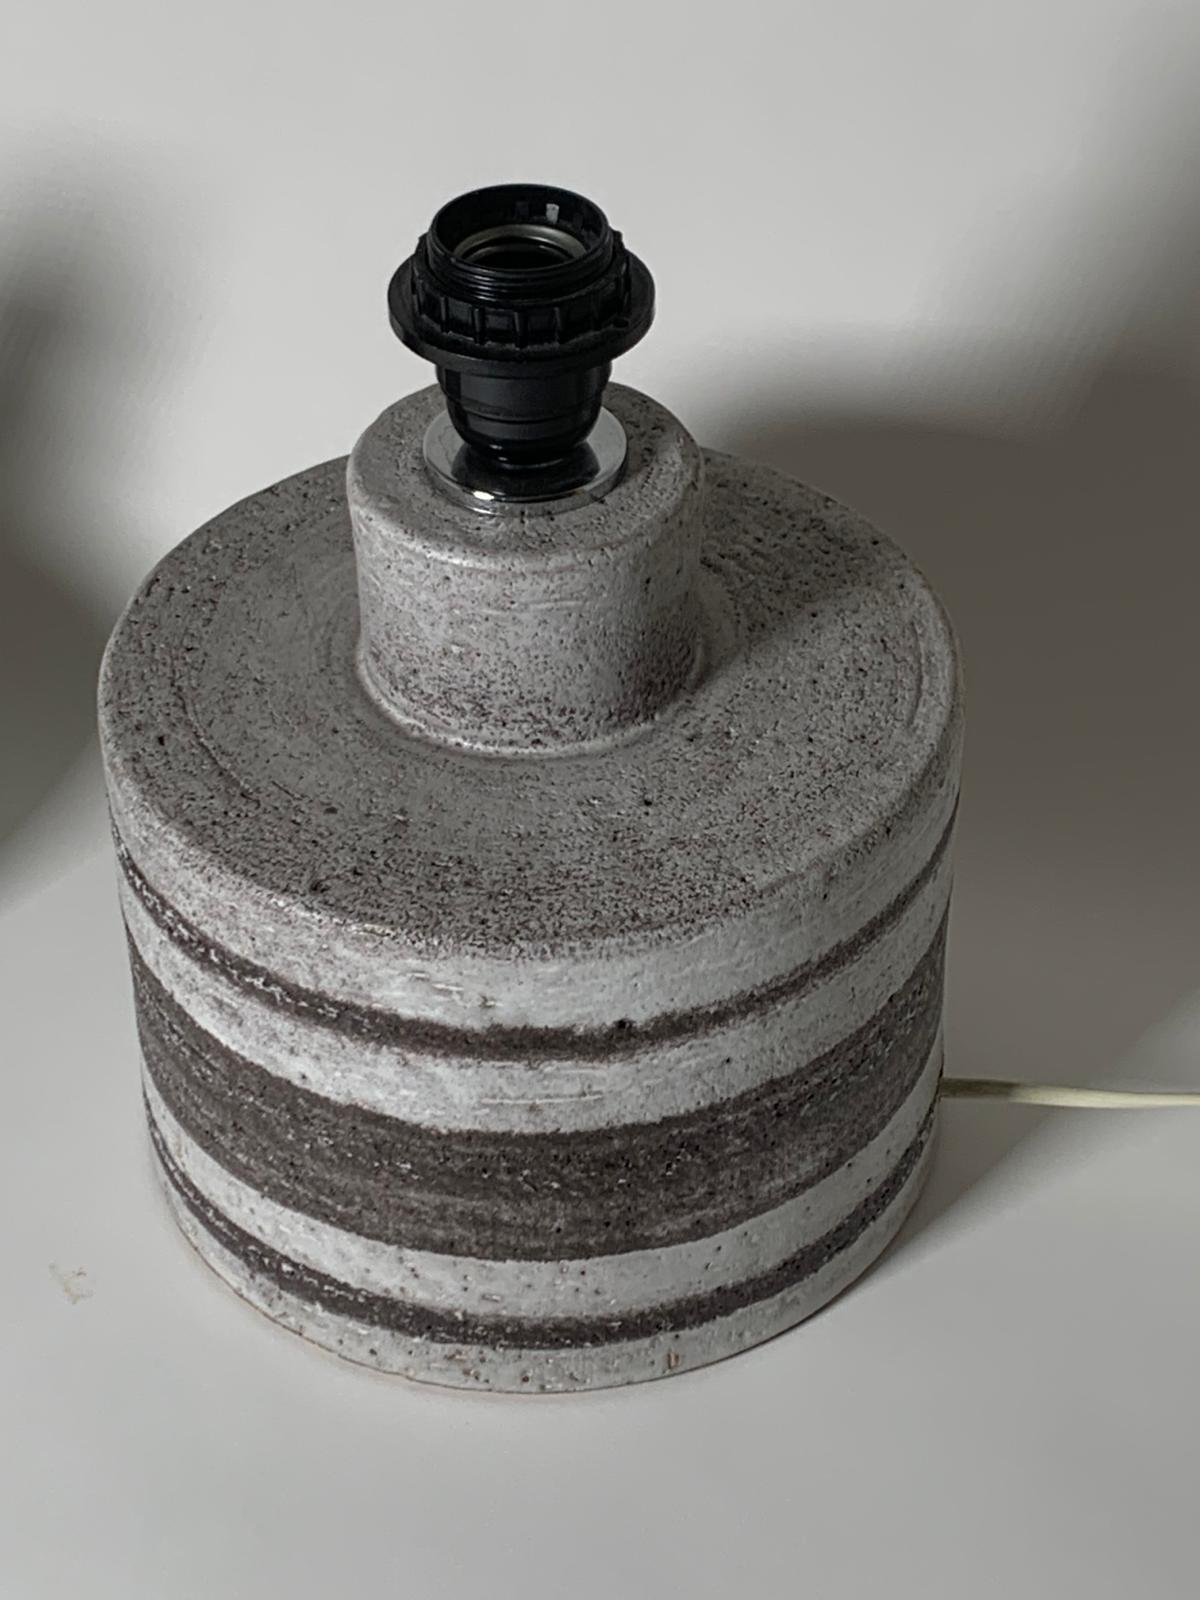 Zwei Gres-Lampensockel aus den 1960er Jahren
Kleiner Sockel mit den Maßen H 20 cm x Durchmesser 15 cm.

Über Gres
Keramische Masse aus harter Paste, kompakt, klangvoll, wasserfest, die durch Brennen bis zur beginnenden Verglasung der Mischung